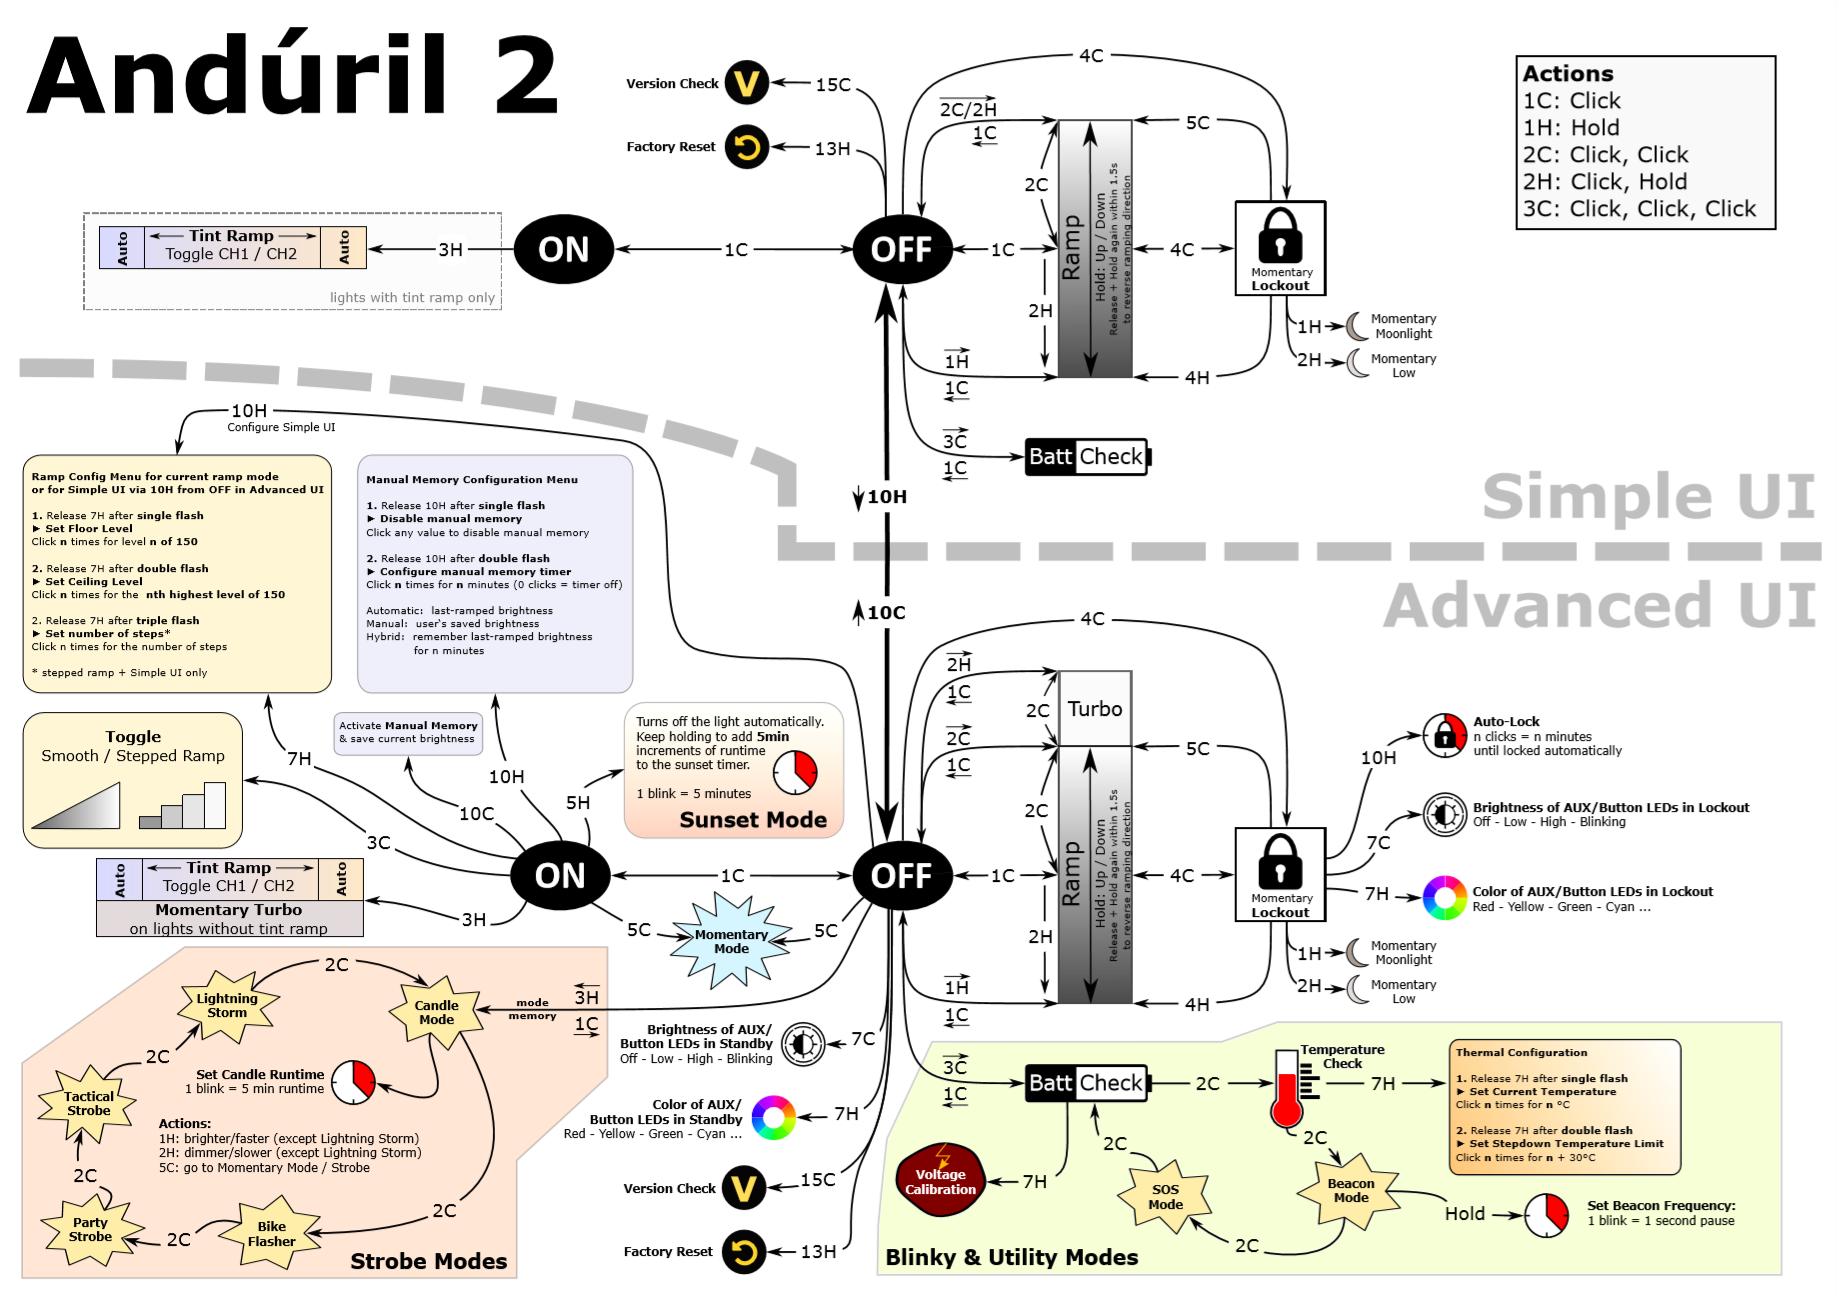 Anduril 2 UI diagram